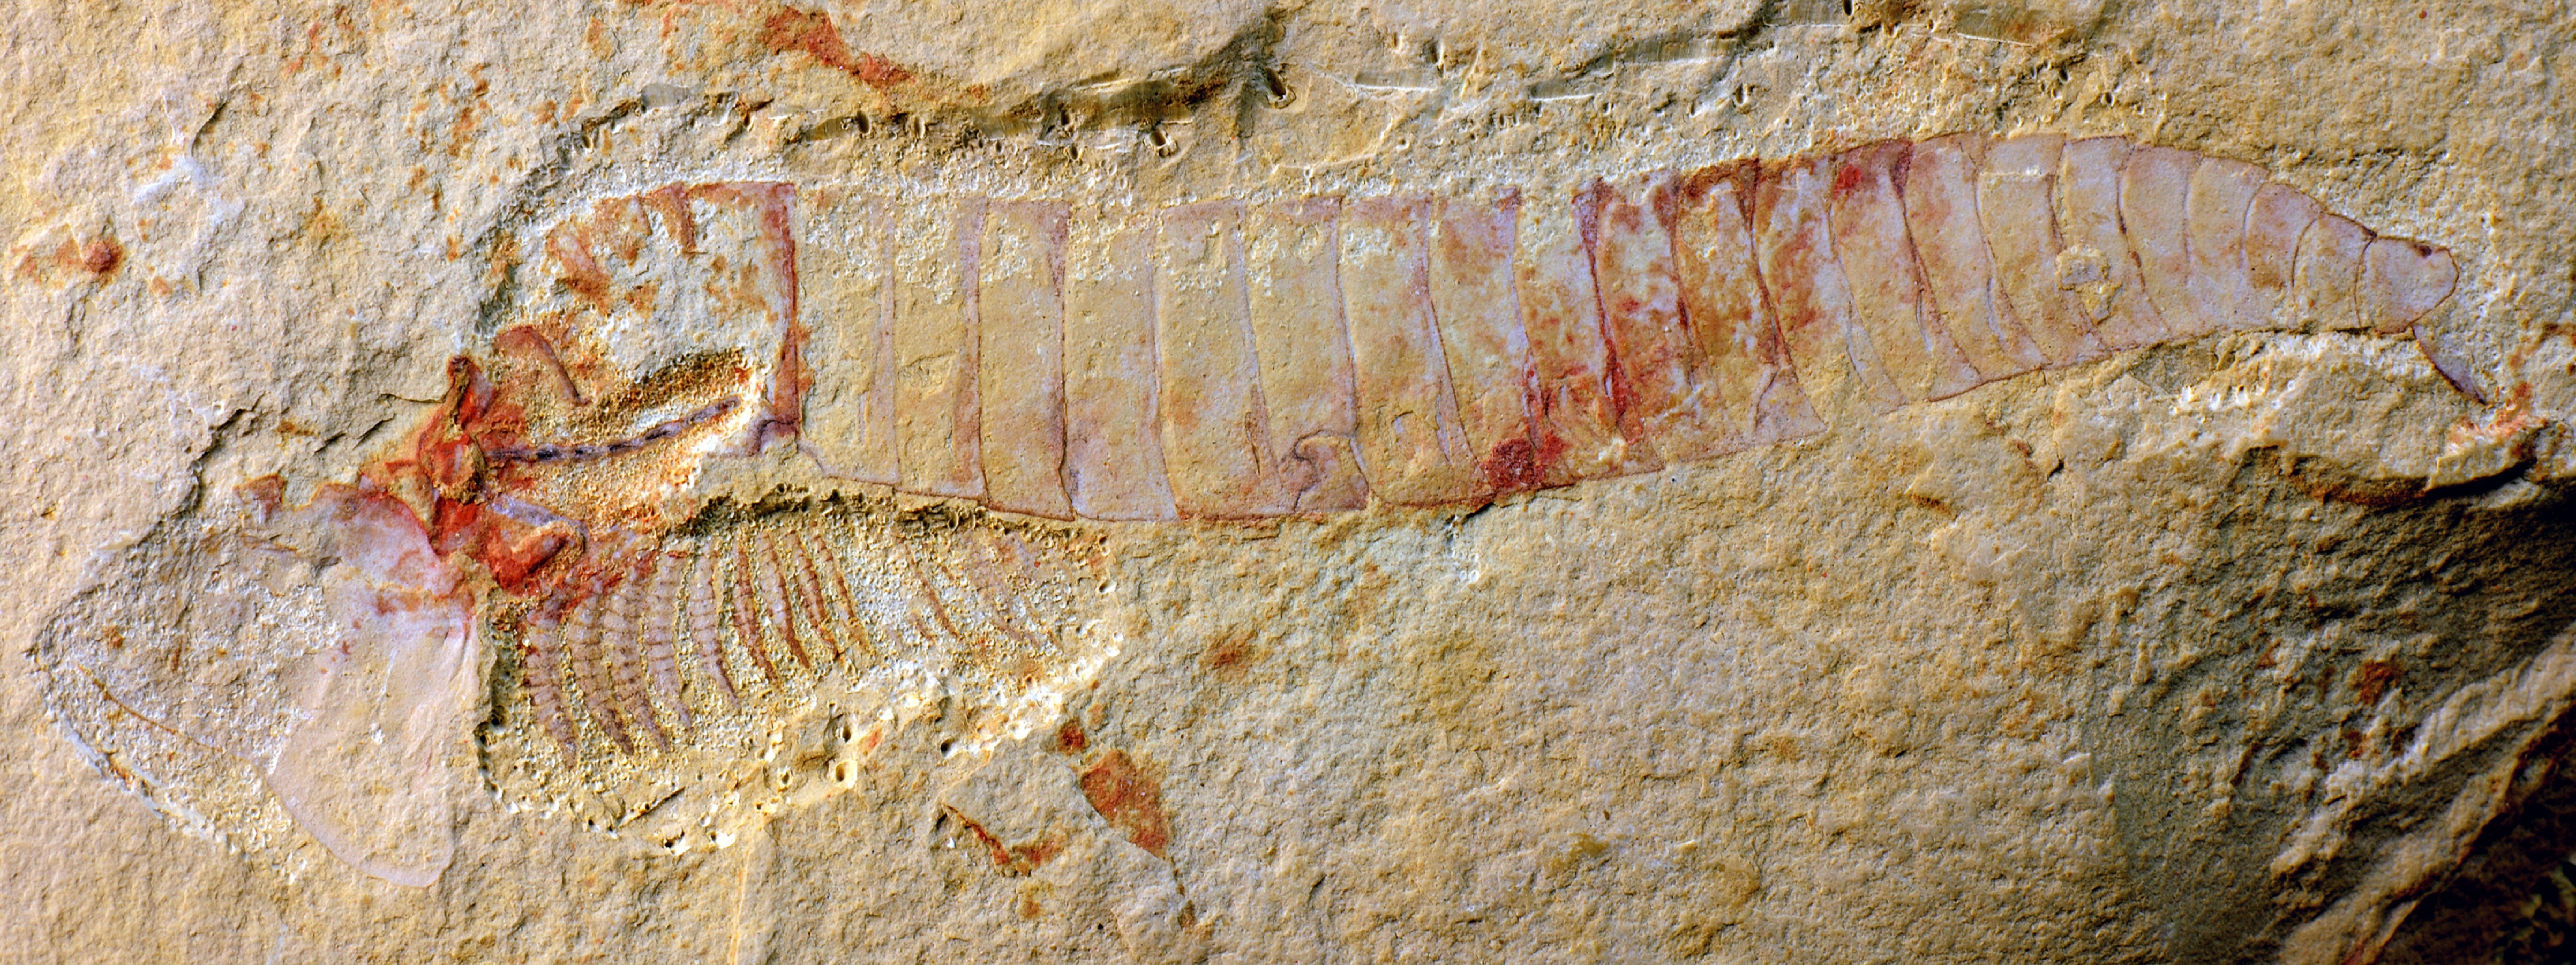 El fósil encontrado. Imagen: Jie Yang. Fuente: Universidad de Cambridge.